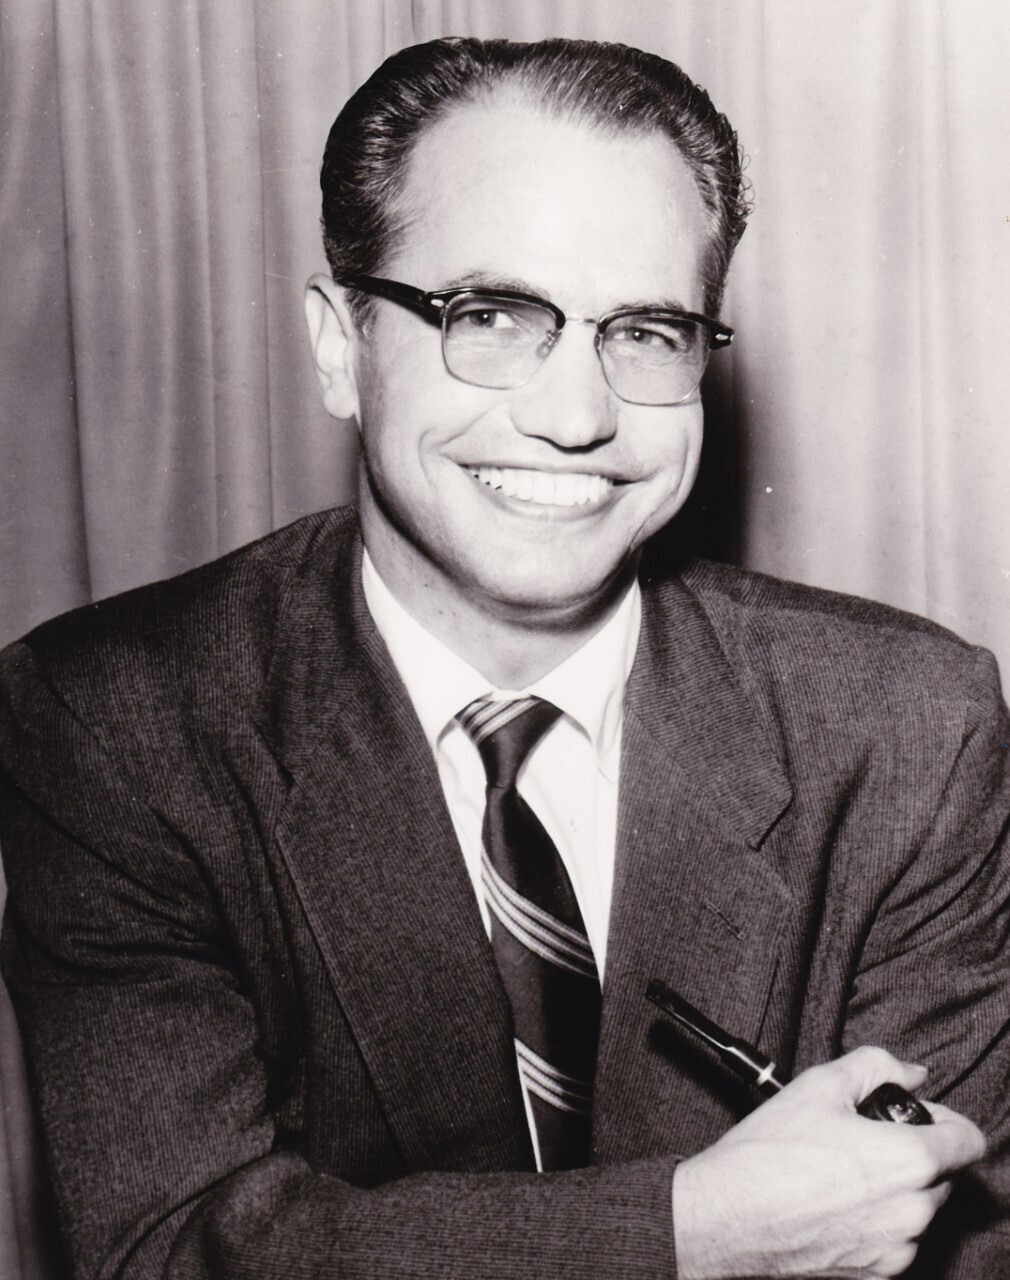 Armando del Moral recaló en Los Ángeles en 1943 y se convirtió en un influyente personaje.